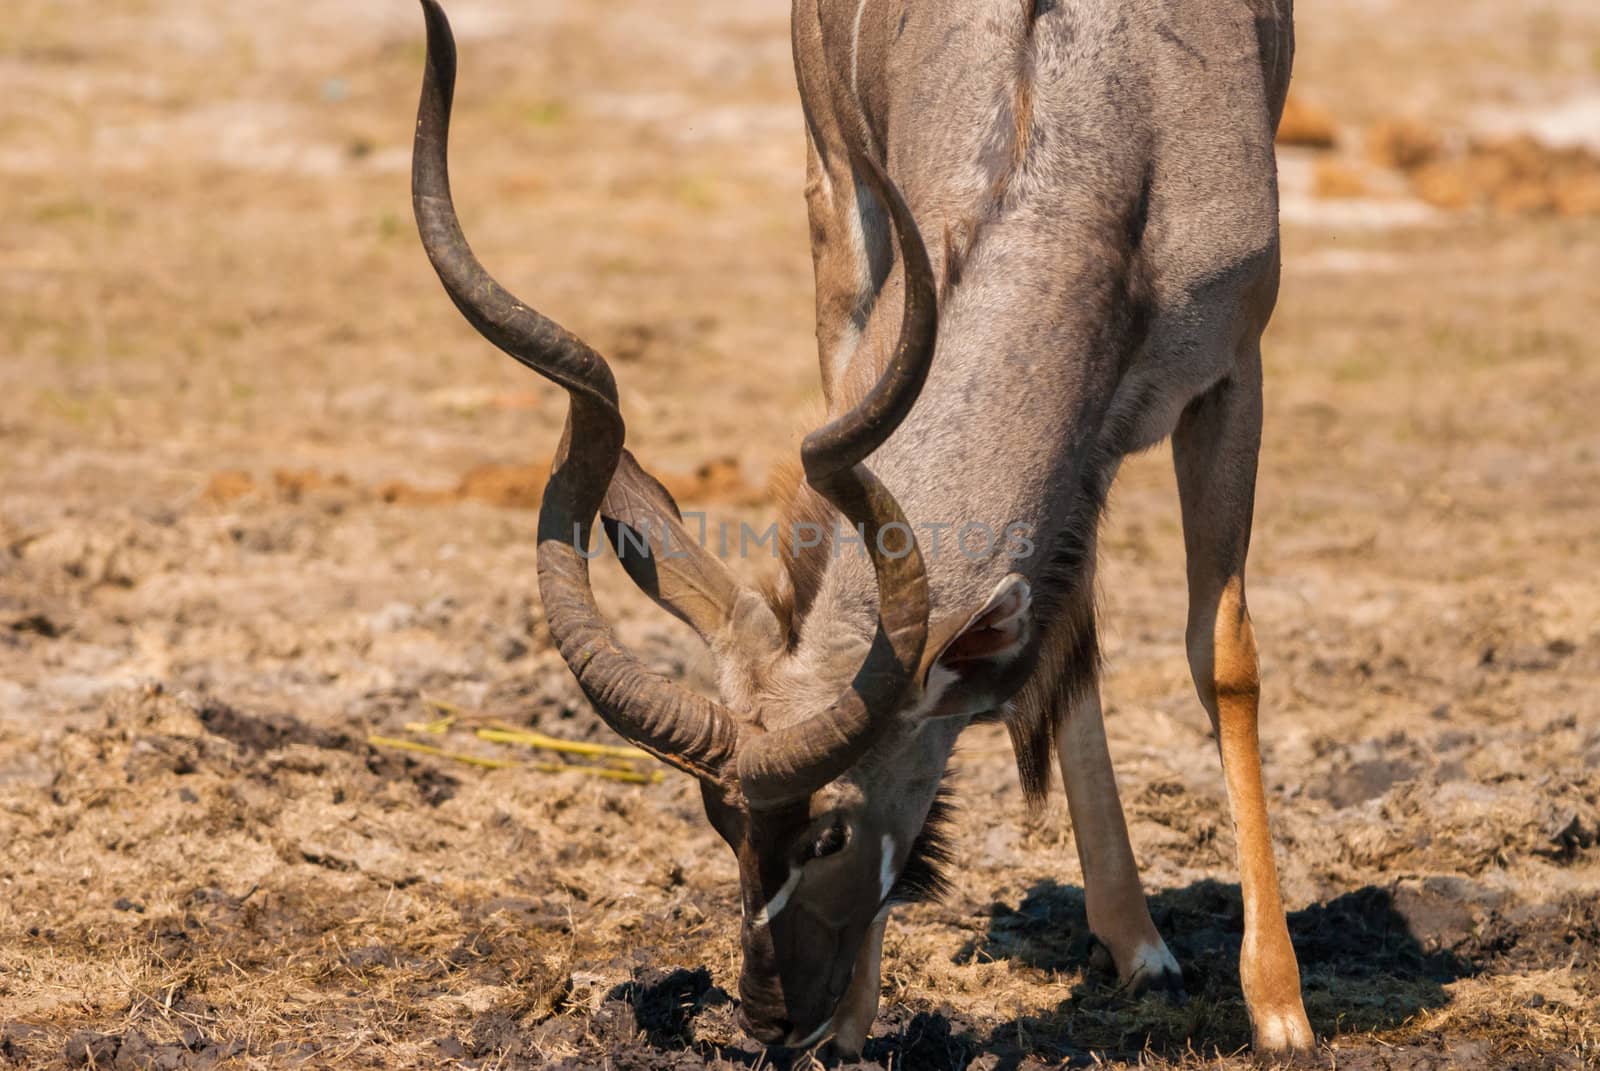 Kudu bull grazing and drinking, Chobe National Park